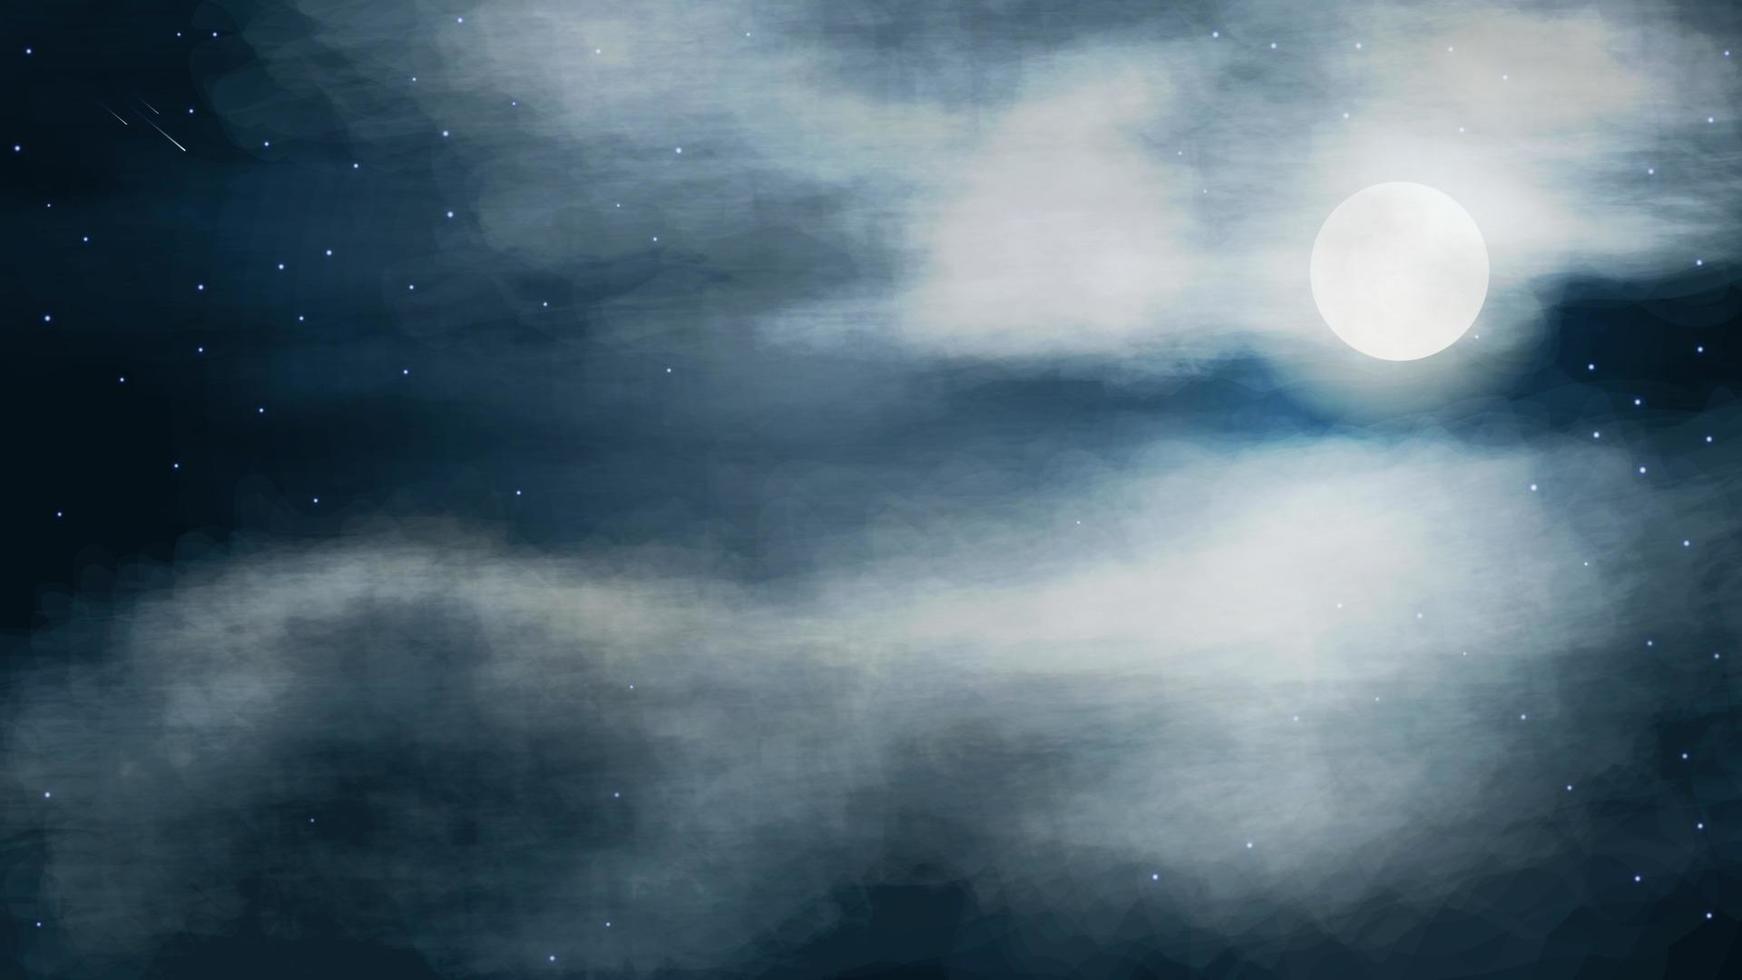 céu noturno com lua cheia em nuvens espessas, ilustração vetorial fotorrealista vetor